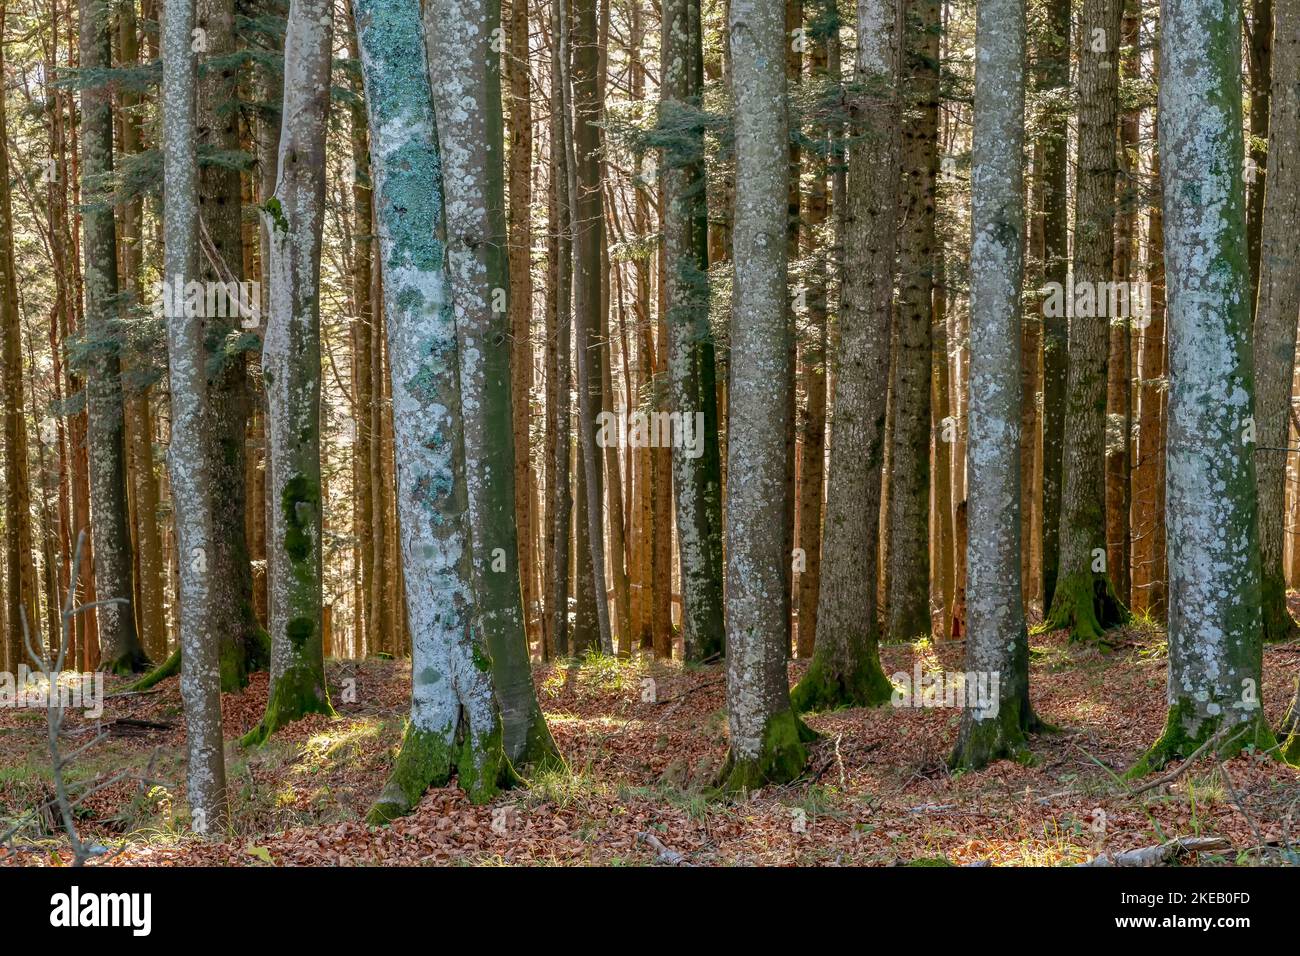 Detail of the Casentino forest near Badia Prataglia, Arezzo, Italy, during the autumn season Stock Photo